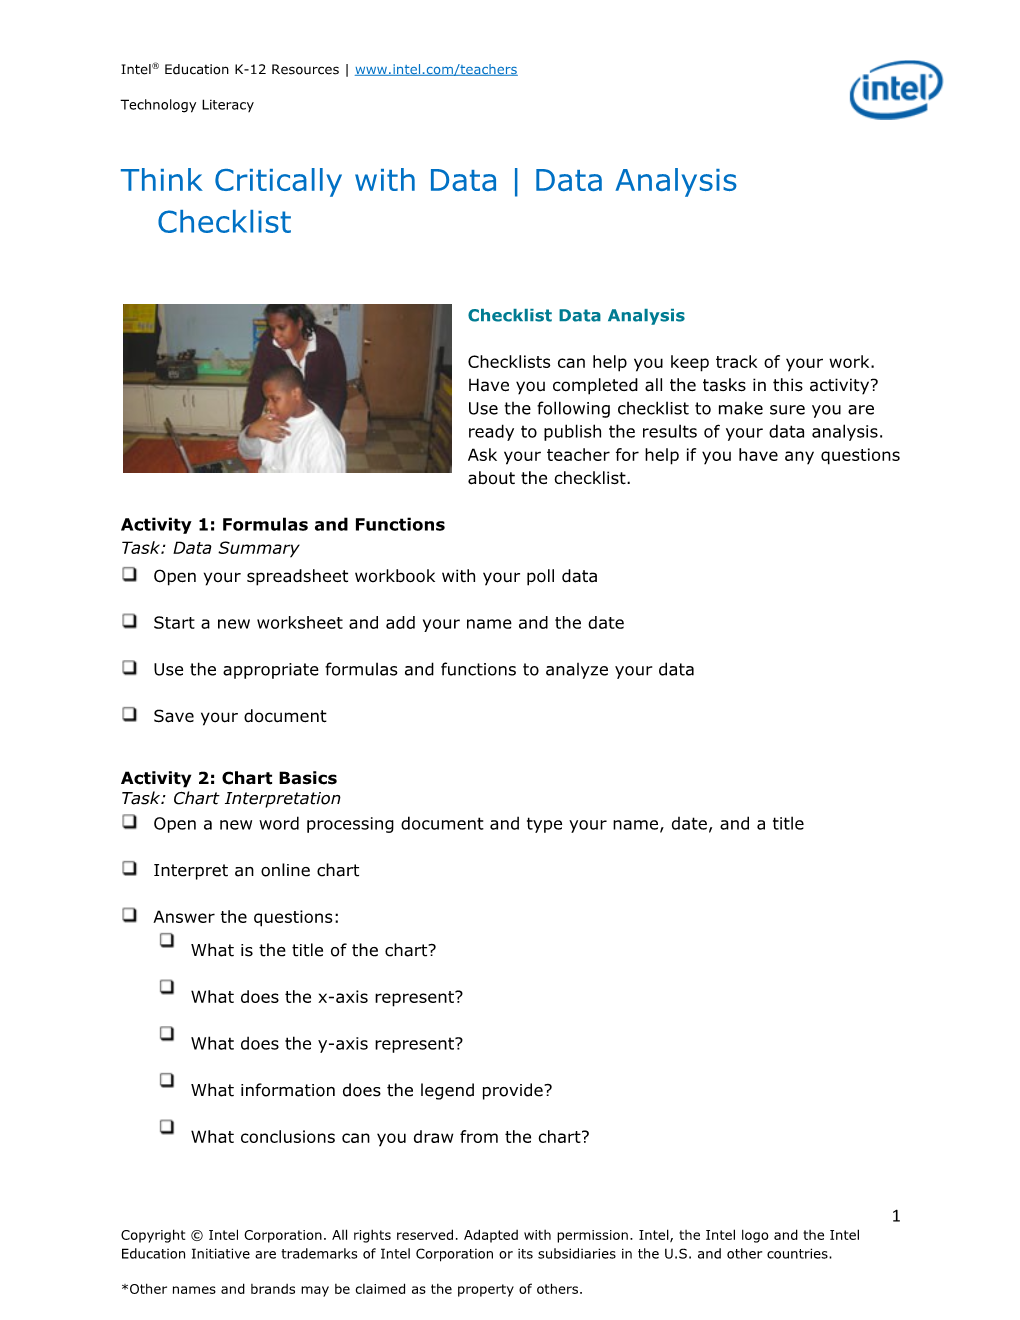 Think Critically with Data Data Analysischecklist